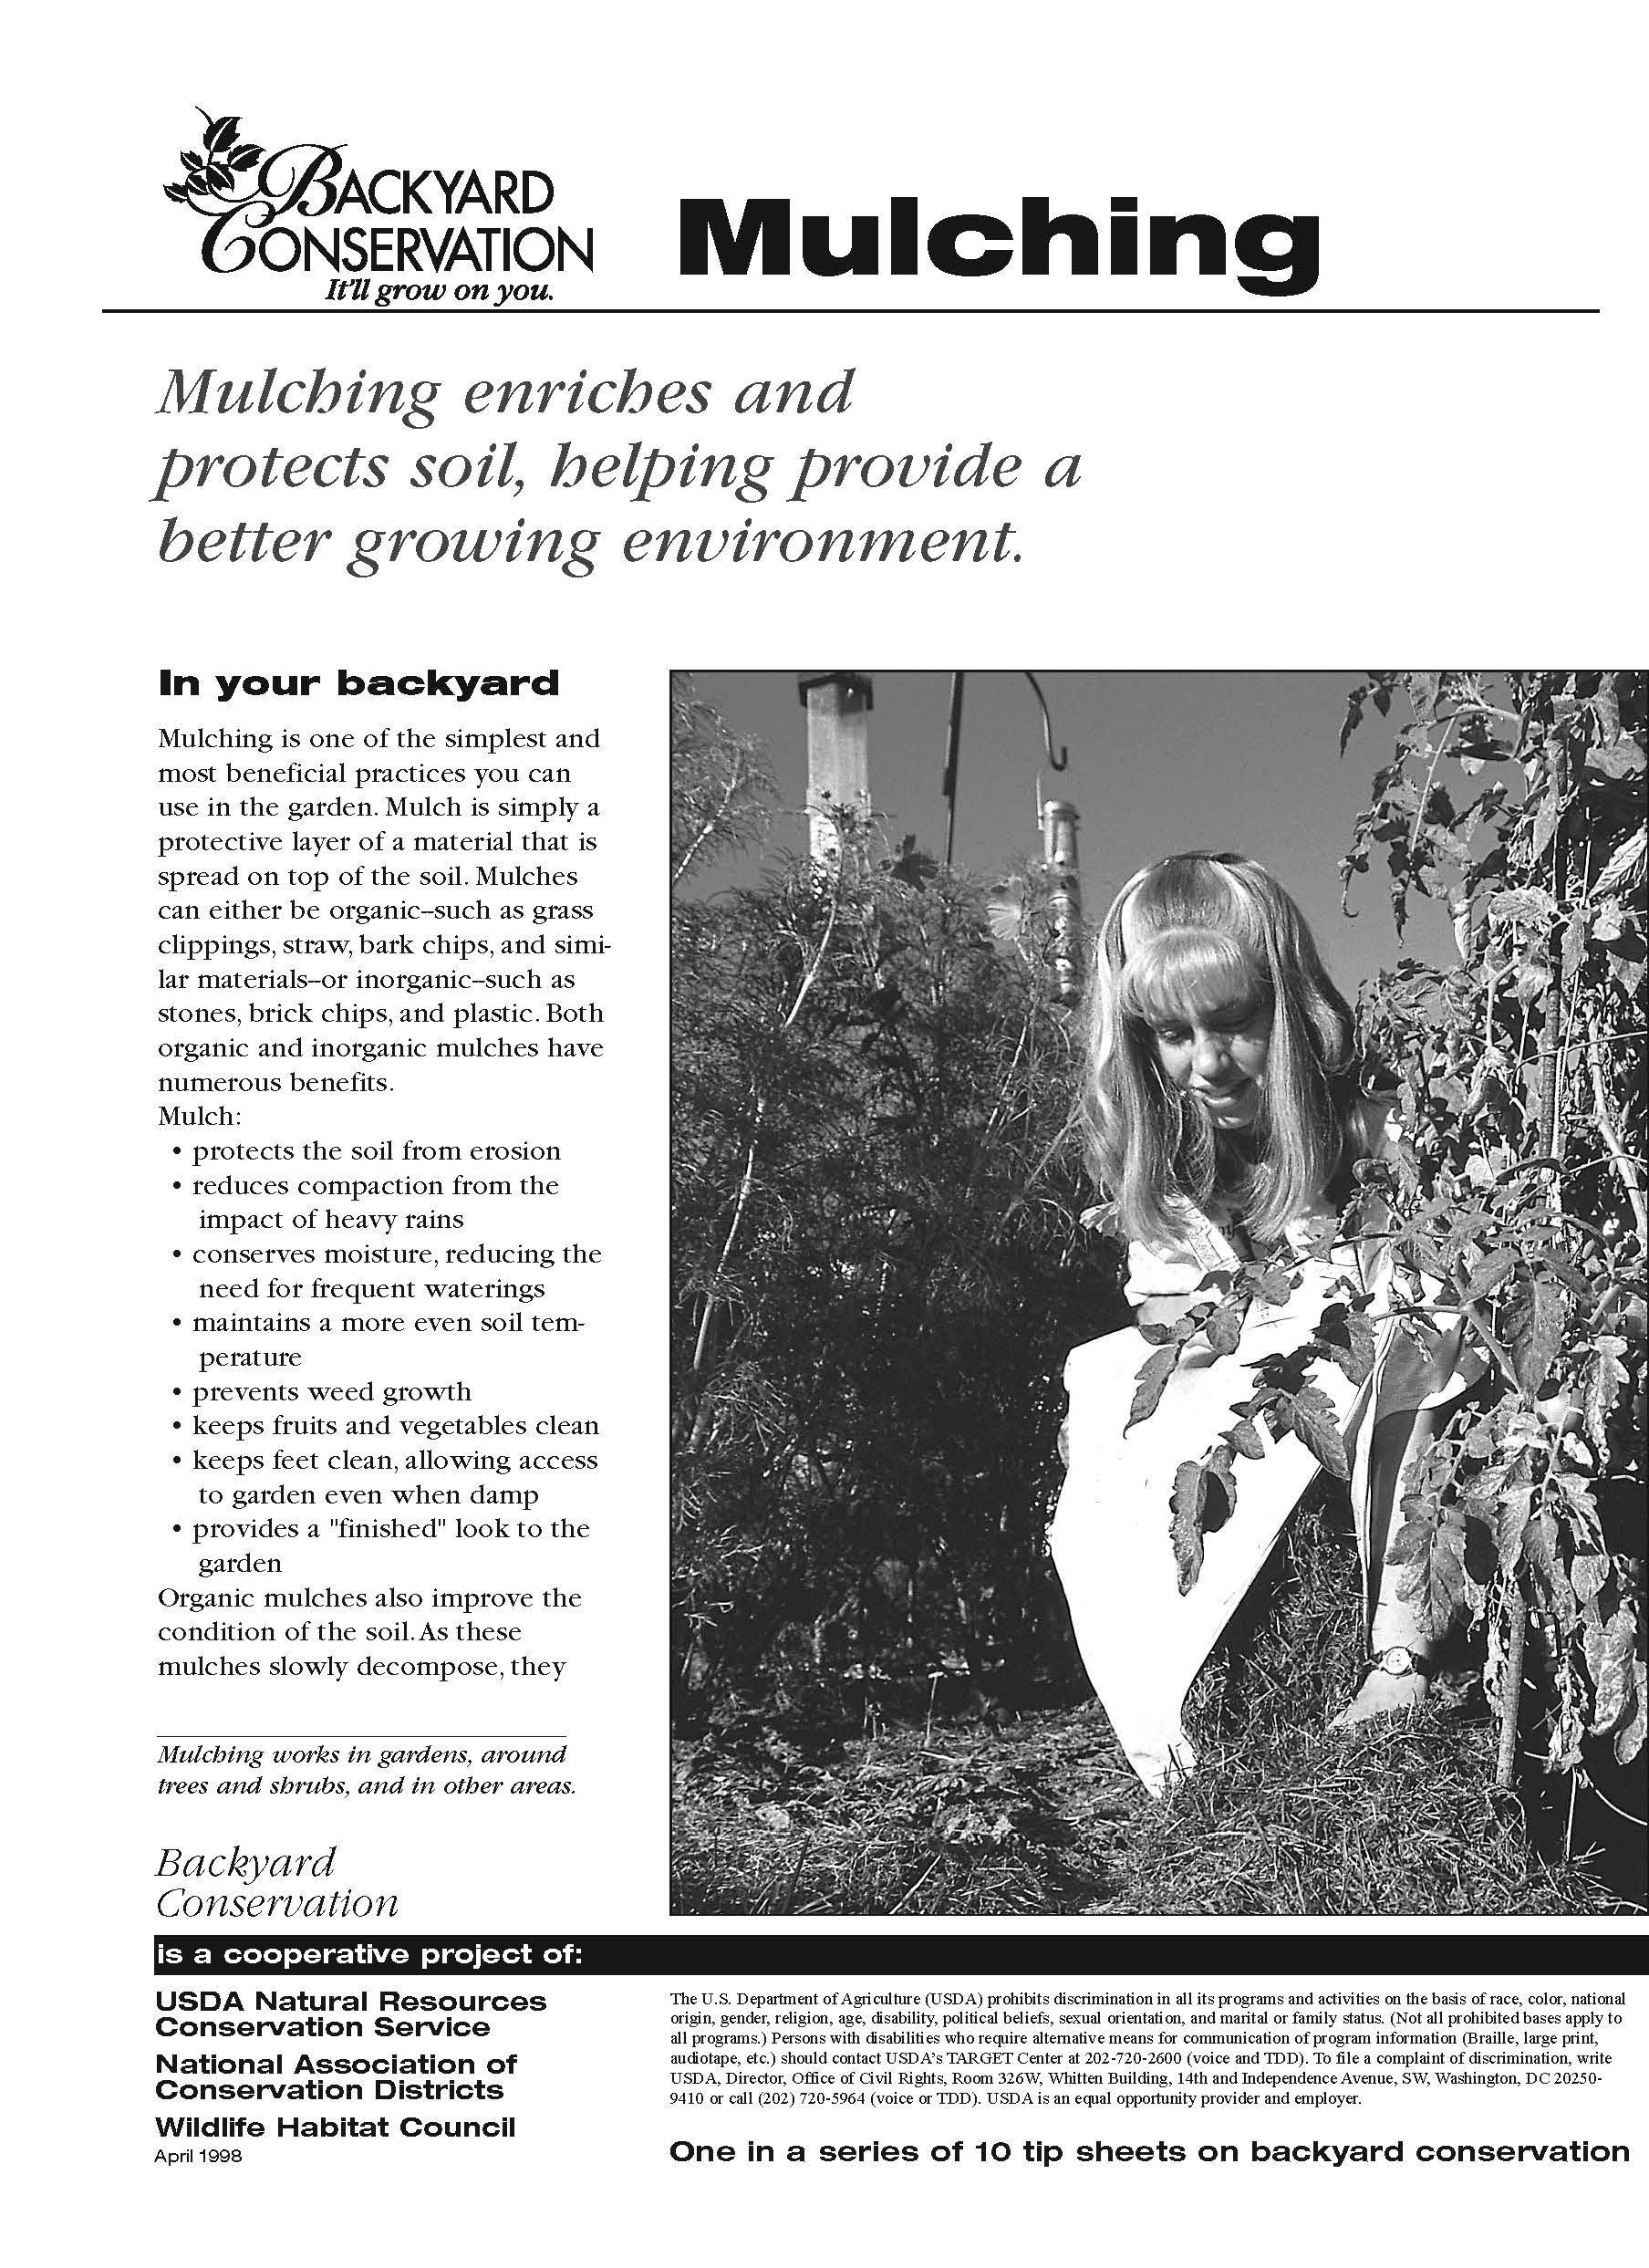 Backyard Conservation Mulching tip sheet